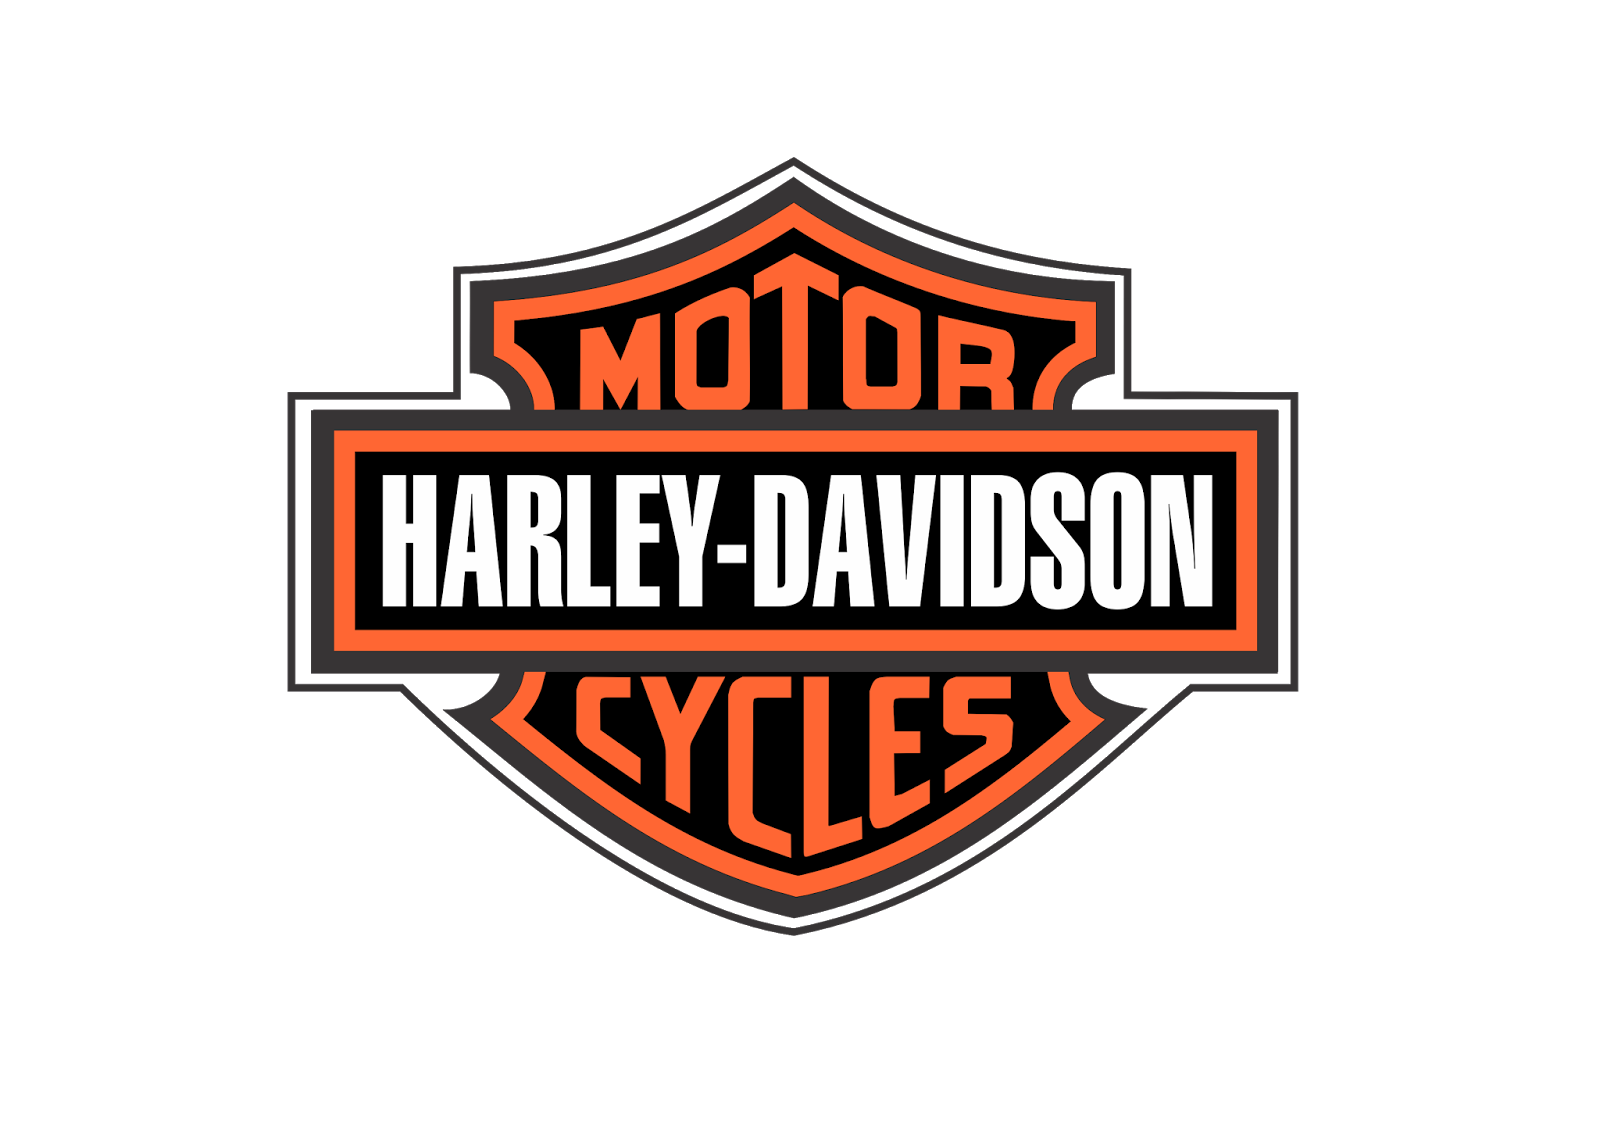 Logotipo da Harley Davidson